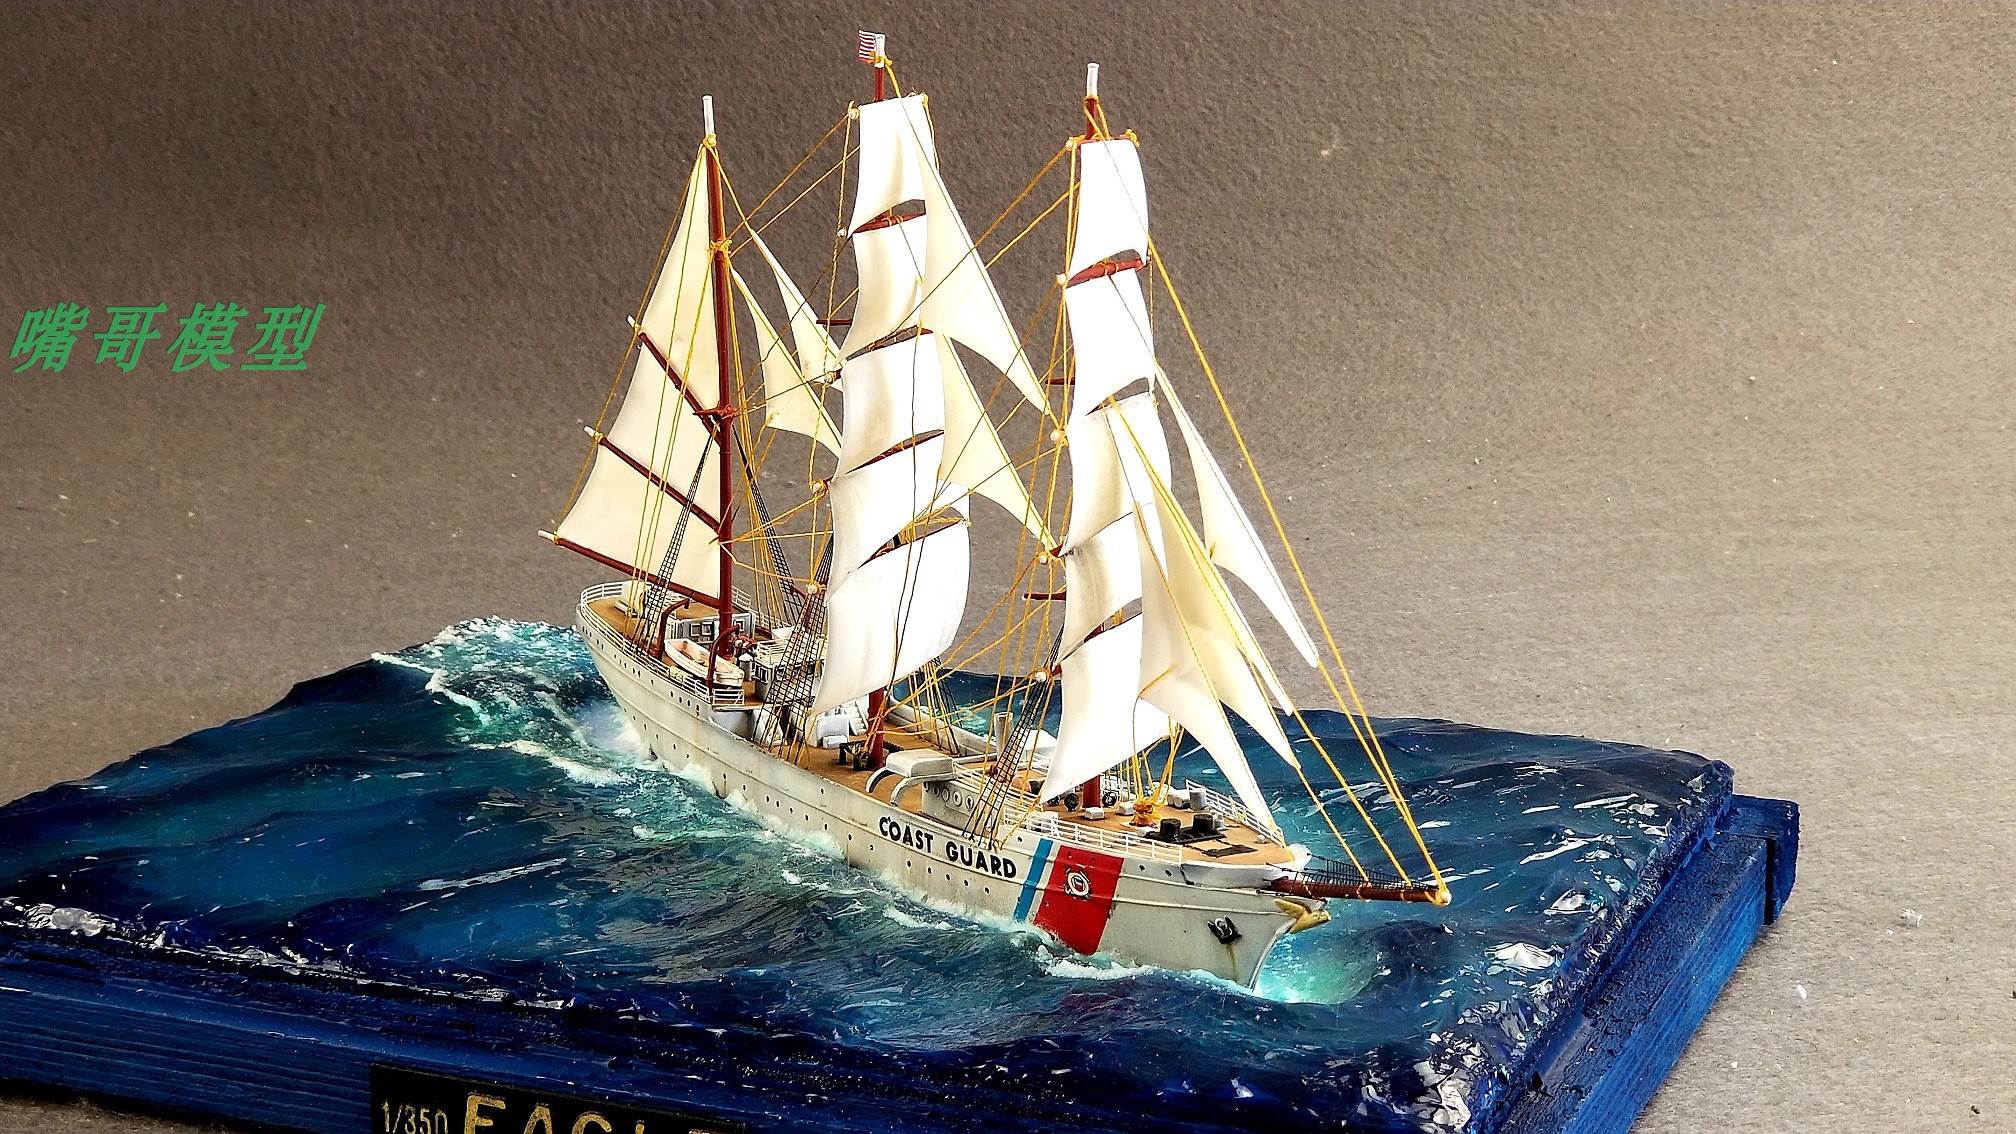 手工制作帆船 高仿真舰艇模型 摆件 礼物 美国海岸警卫队鹰号帆船